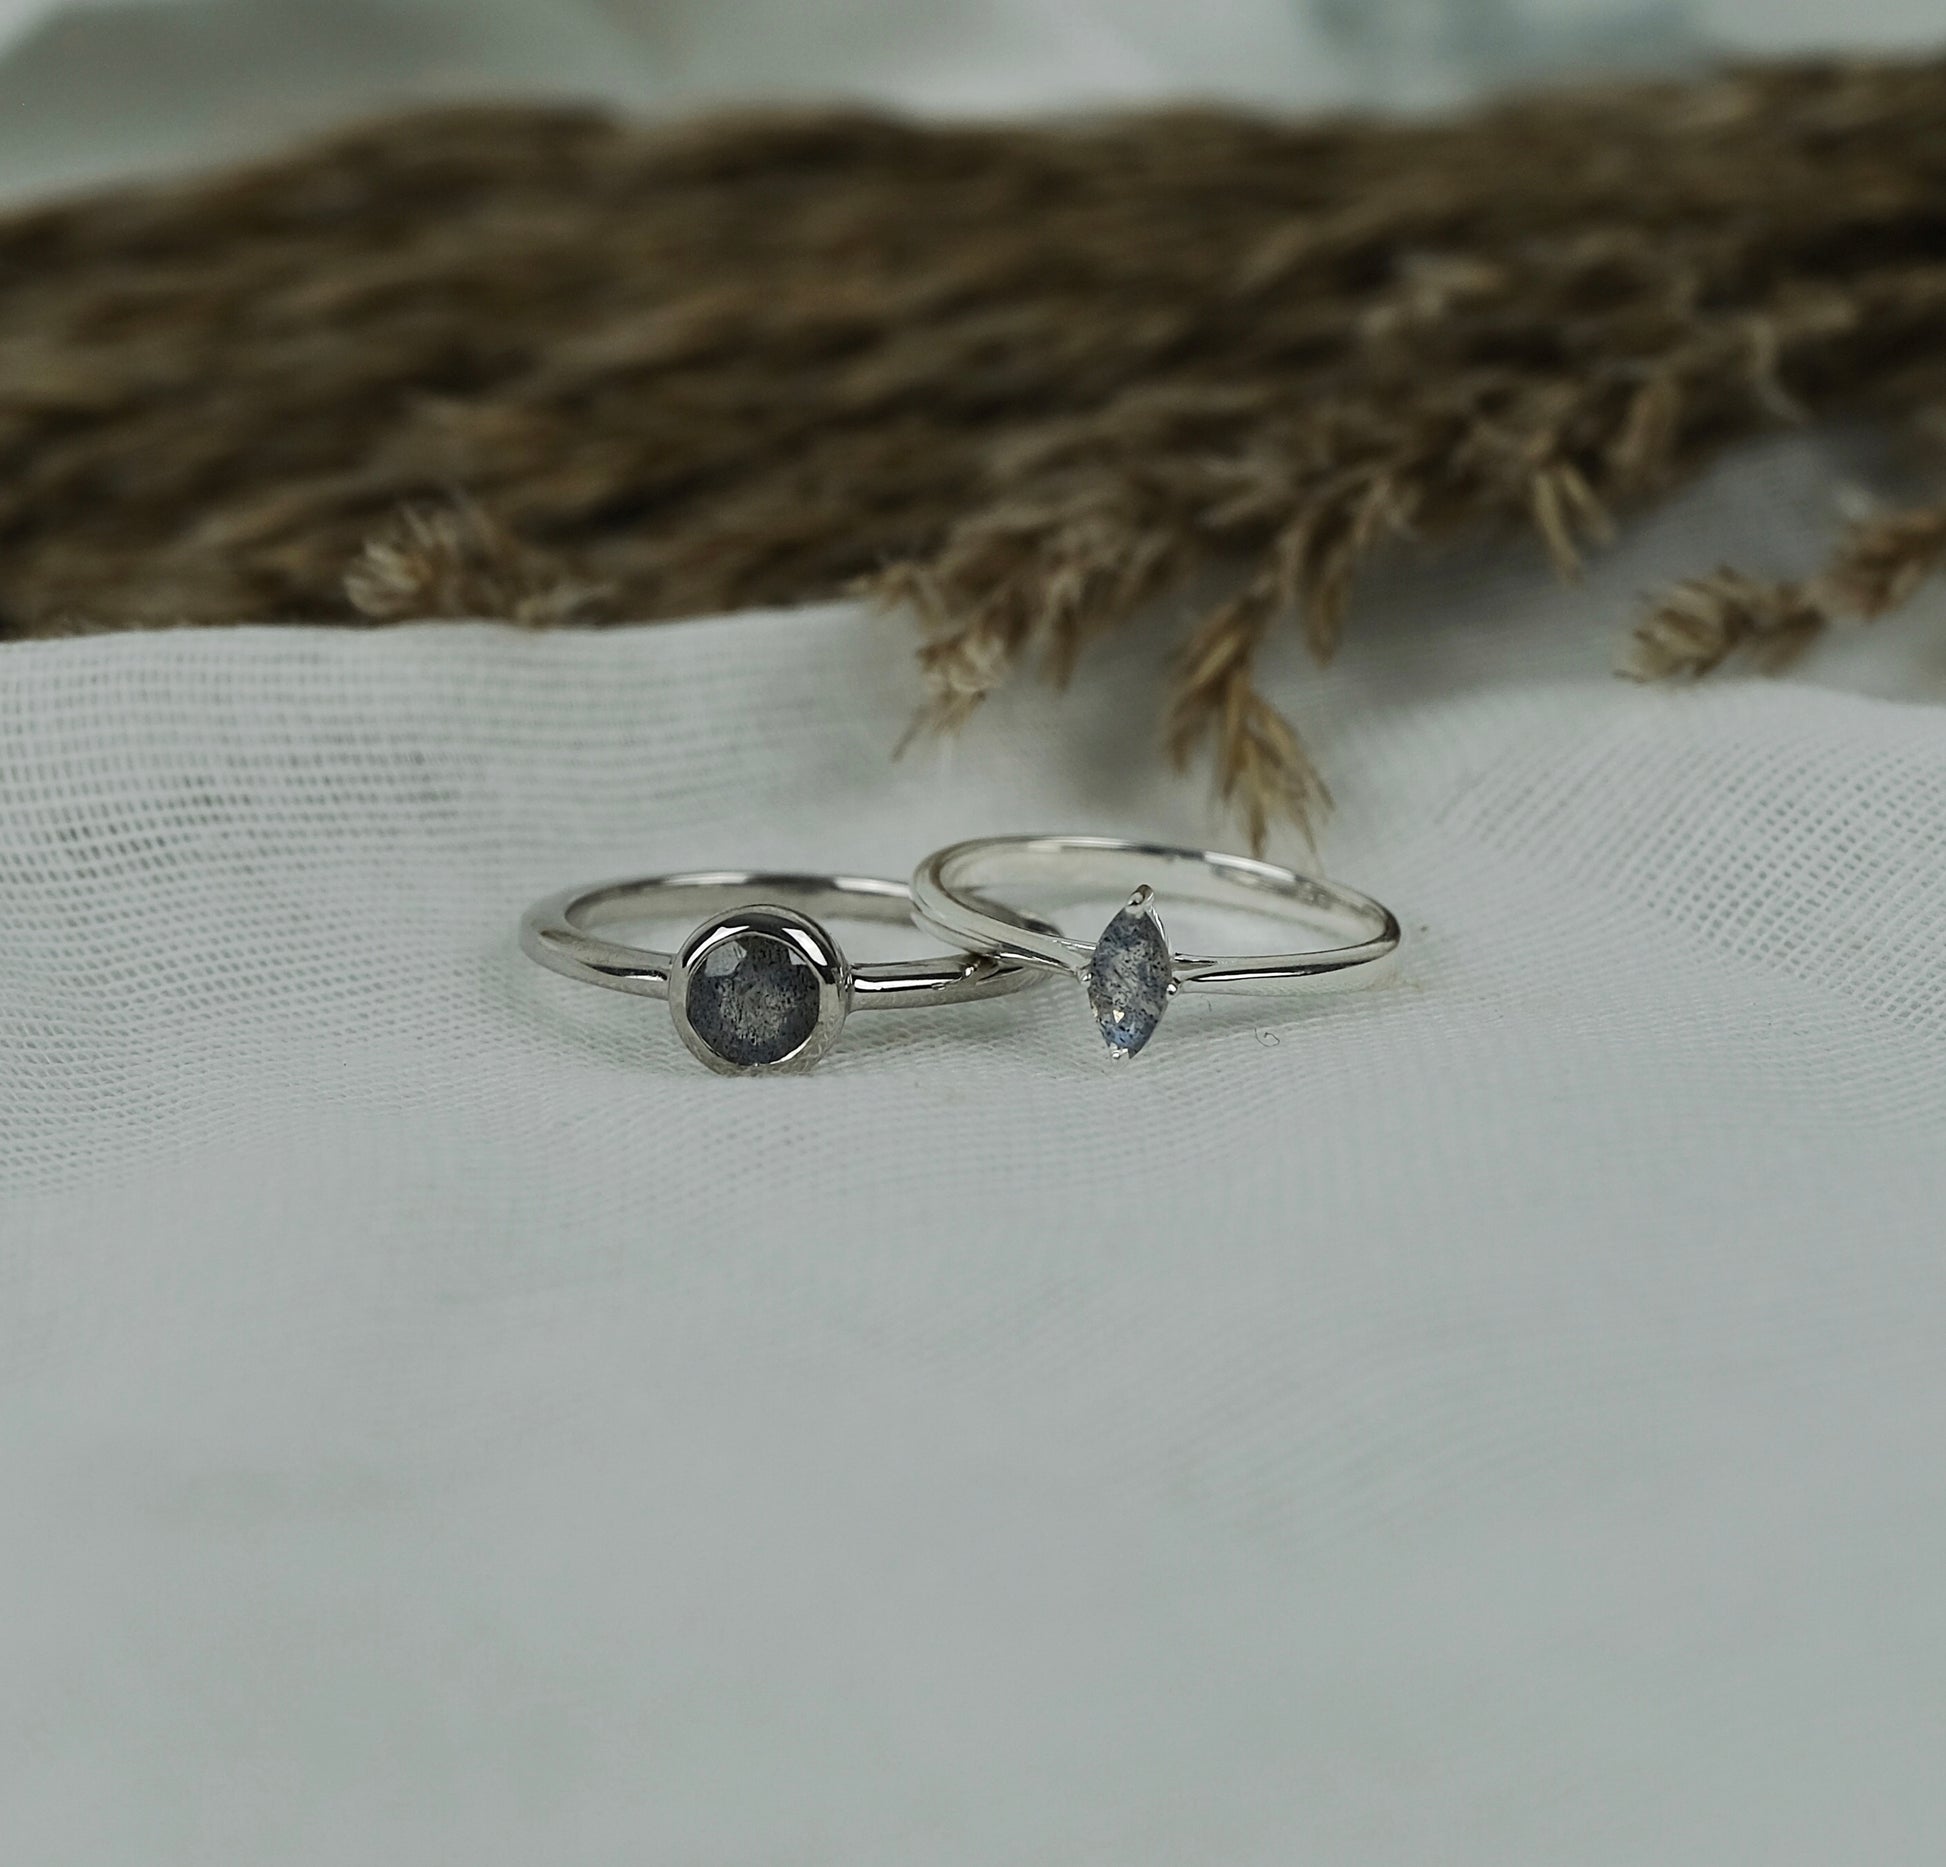 Two labradorite gemstone rings